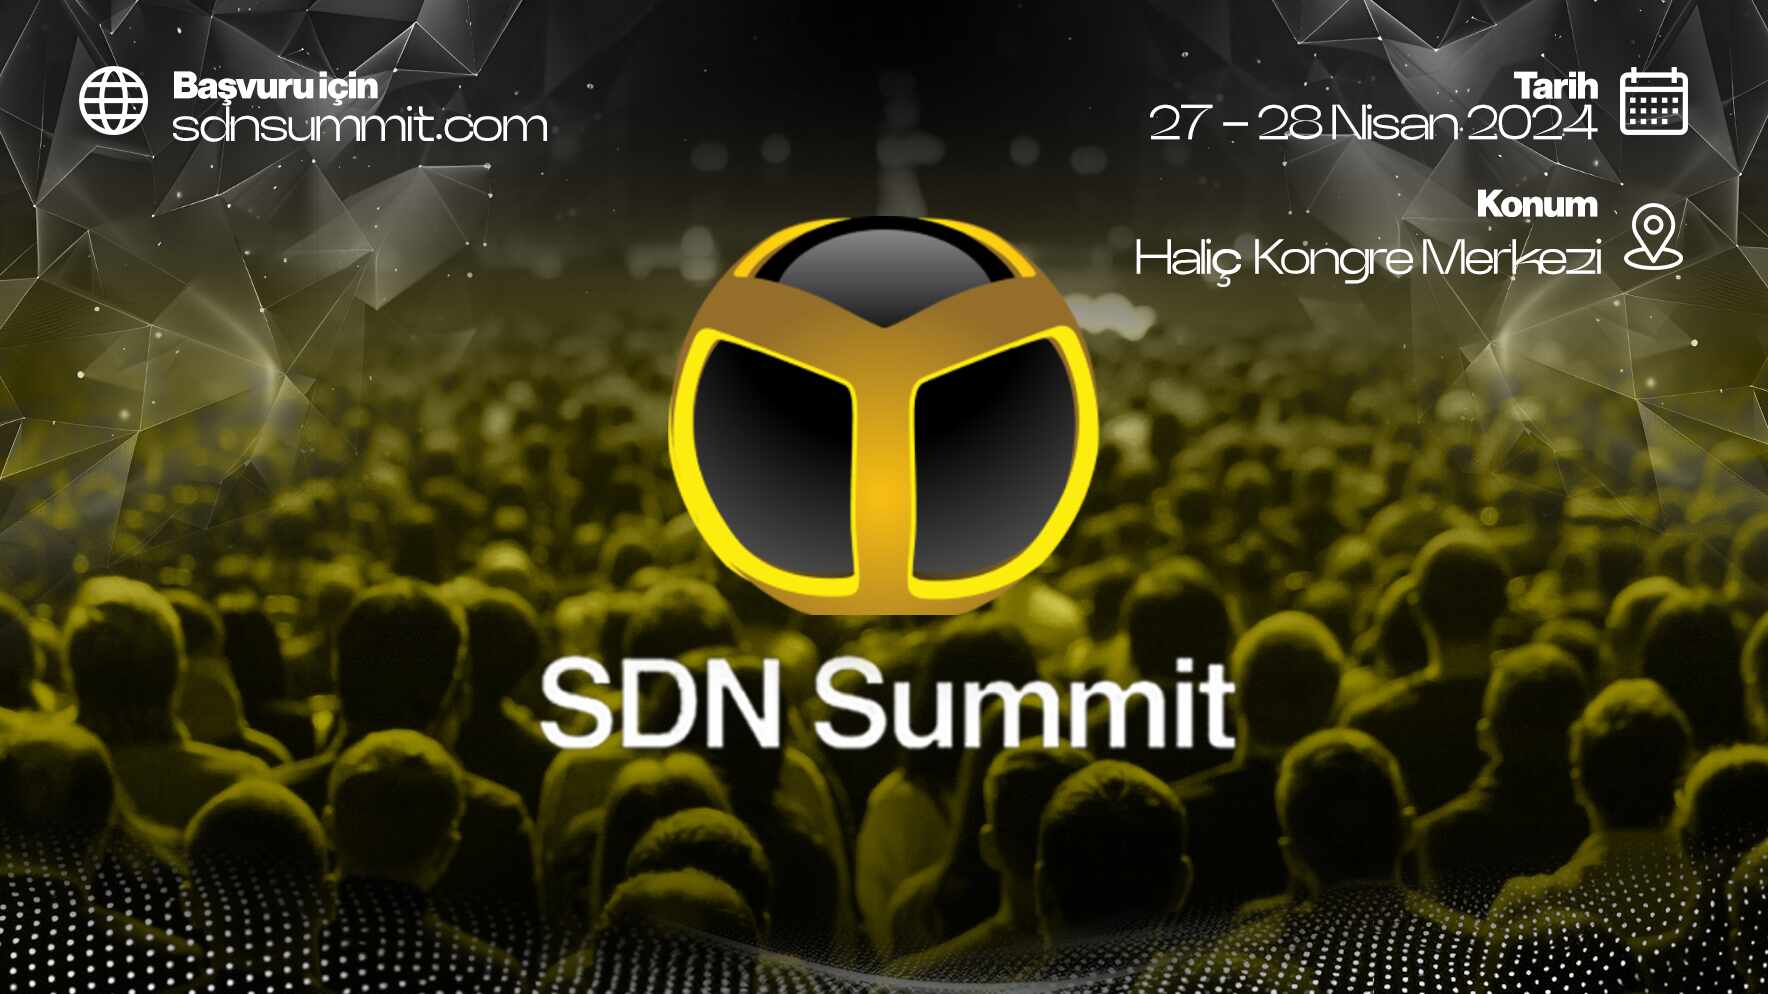 Geleceği Keşfetme Fırsatı Sunan SDN Summit 27-28 Nisan'da Haliç Kongre Merkezi'nde Olacak!